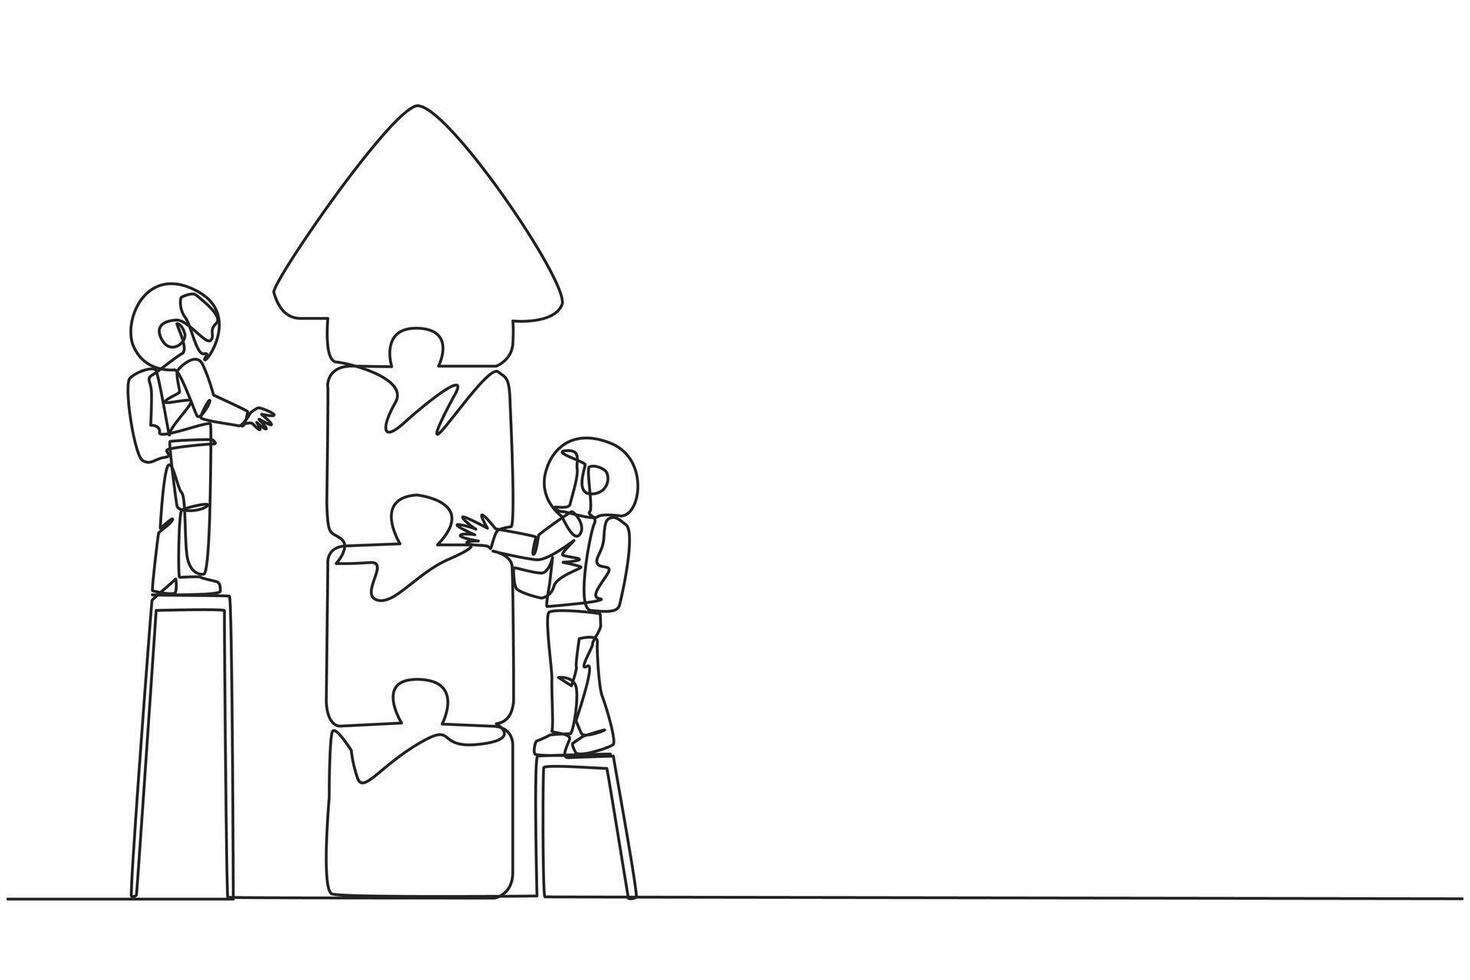 kontinuerlig ett linje teckning två robotar håller på med lagarbete tillsammans. klättrande de trappa, de två sätta tillsammans pussel till form ett pil upp. kosmisk galax begrepp. enda linje dra design vektor illustration